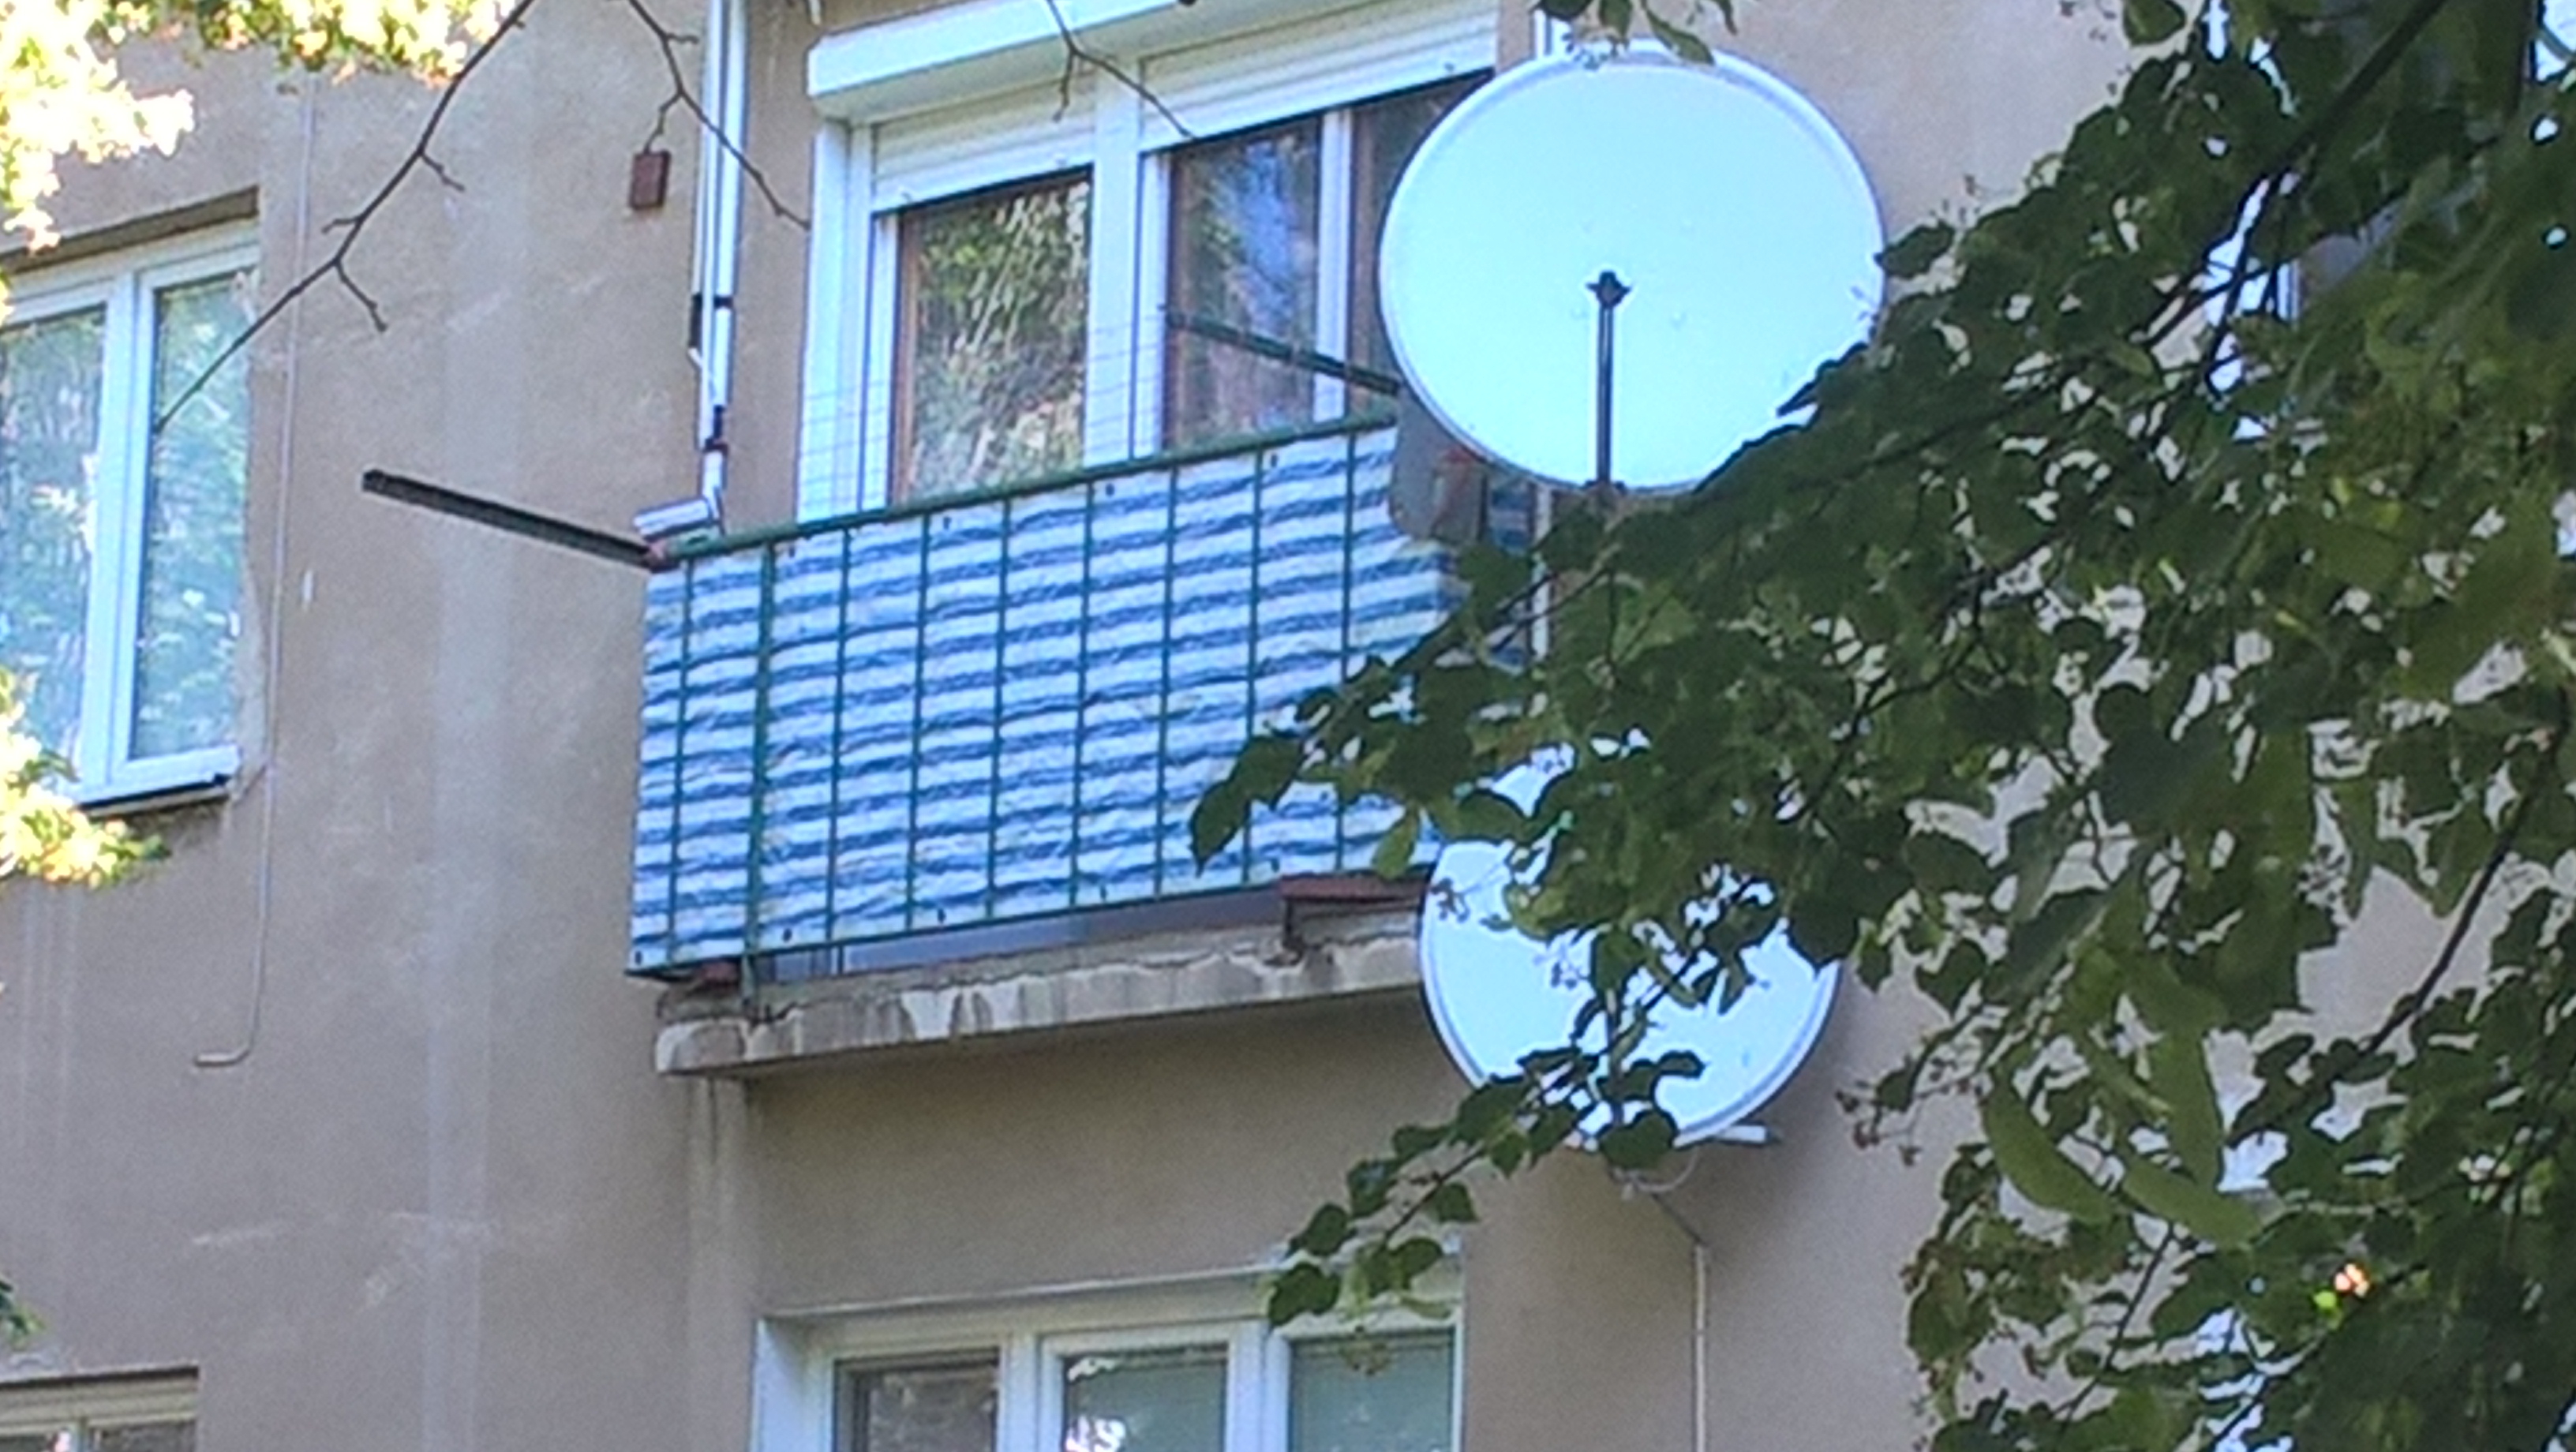 Súkromná kamera na balkóne sníma celú ulicu, Rača, Bratislava |  Odkazprestarostu.sk